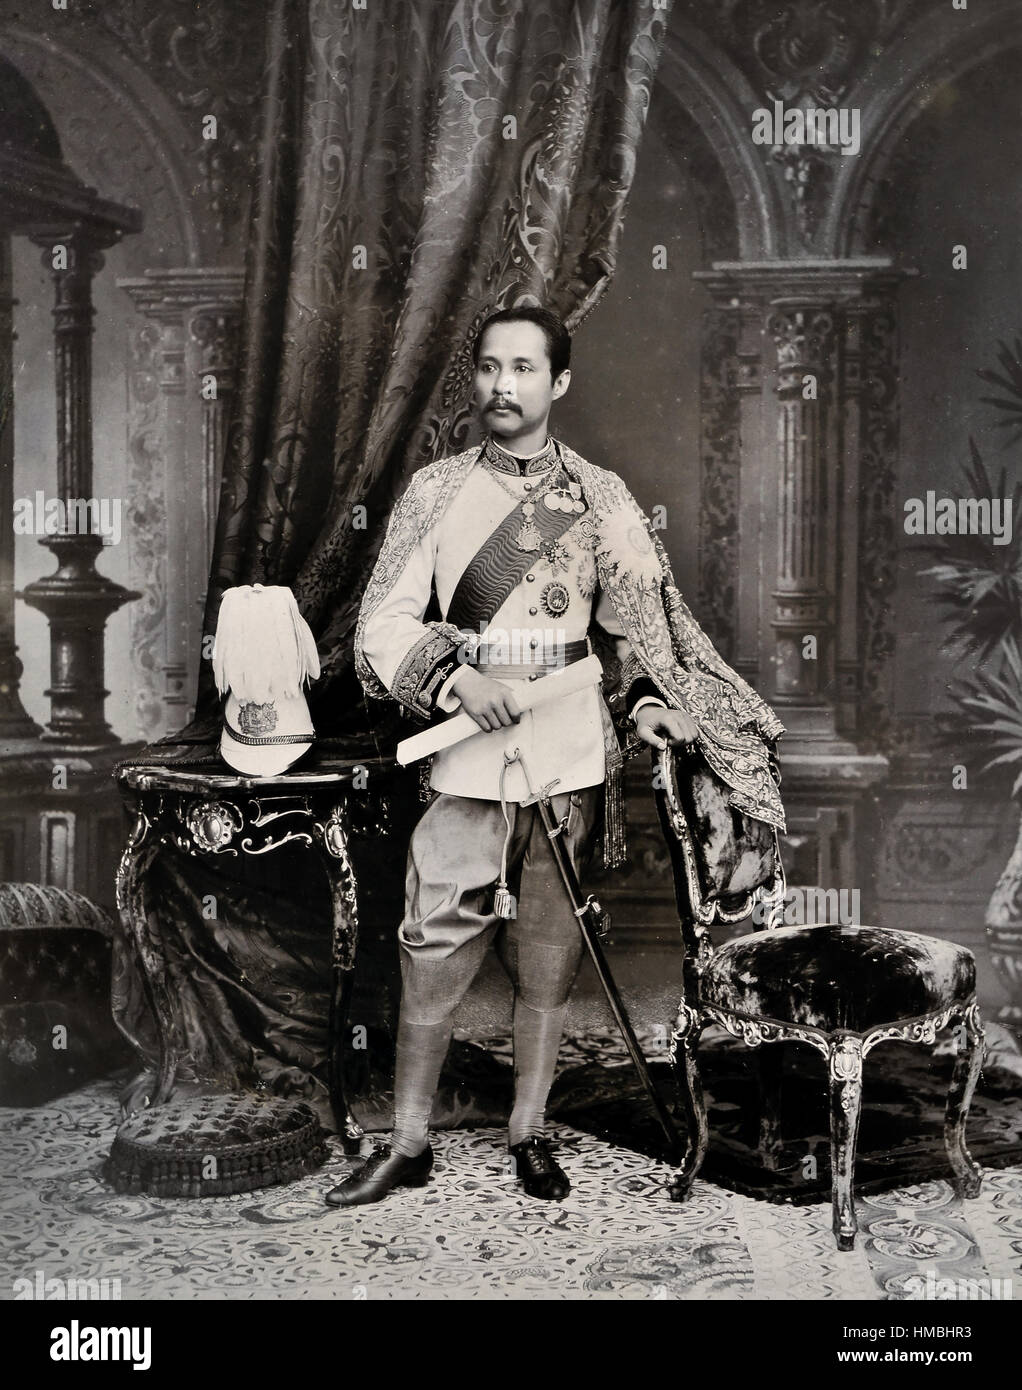 Phra Chula Chomklao Chaoyuhua, 1853 - 1910, meglio noto come Rama V o re Chulalongkorn il grande, è stato il quinto re (Rama) della dinastia Chakri in Thailandia. Egli regnò dal 1868 - 1910 Thailandia, Siam,Thai, Foto Stock